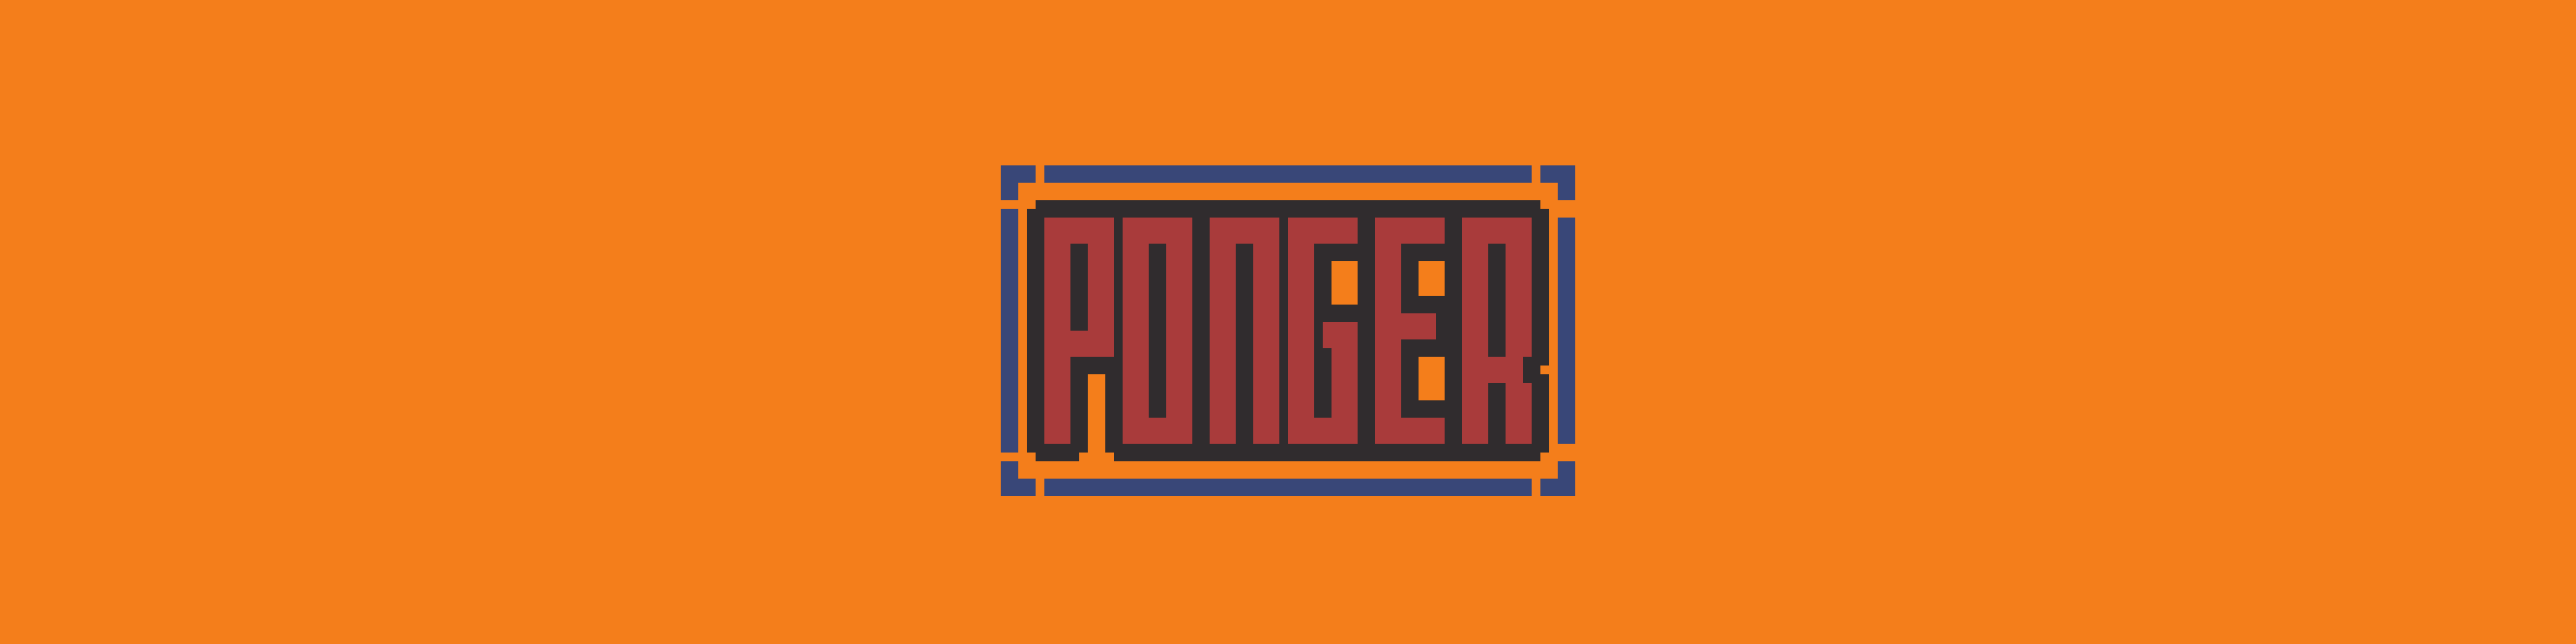 Ponger